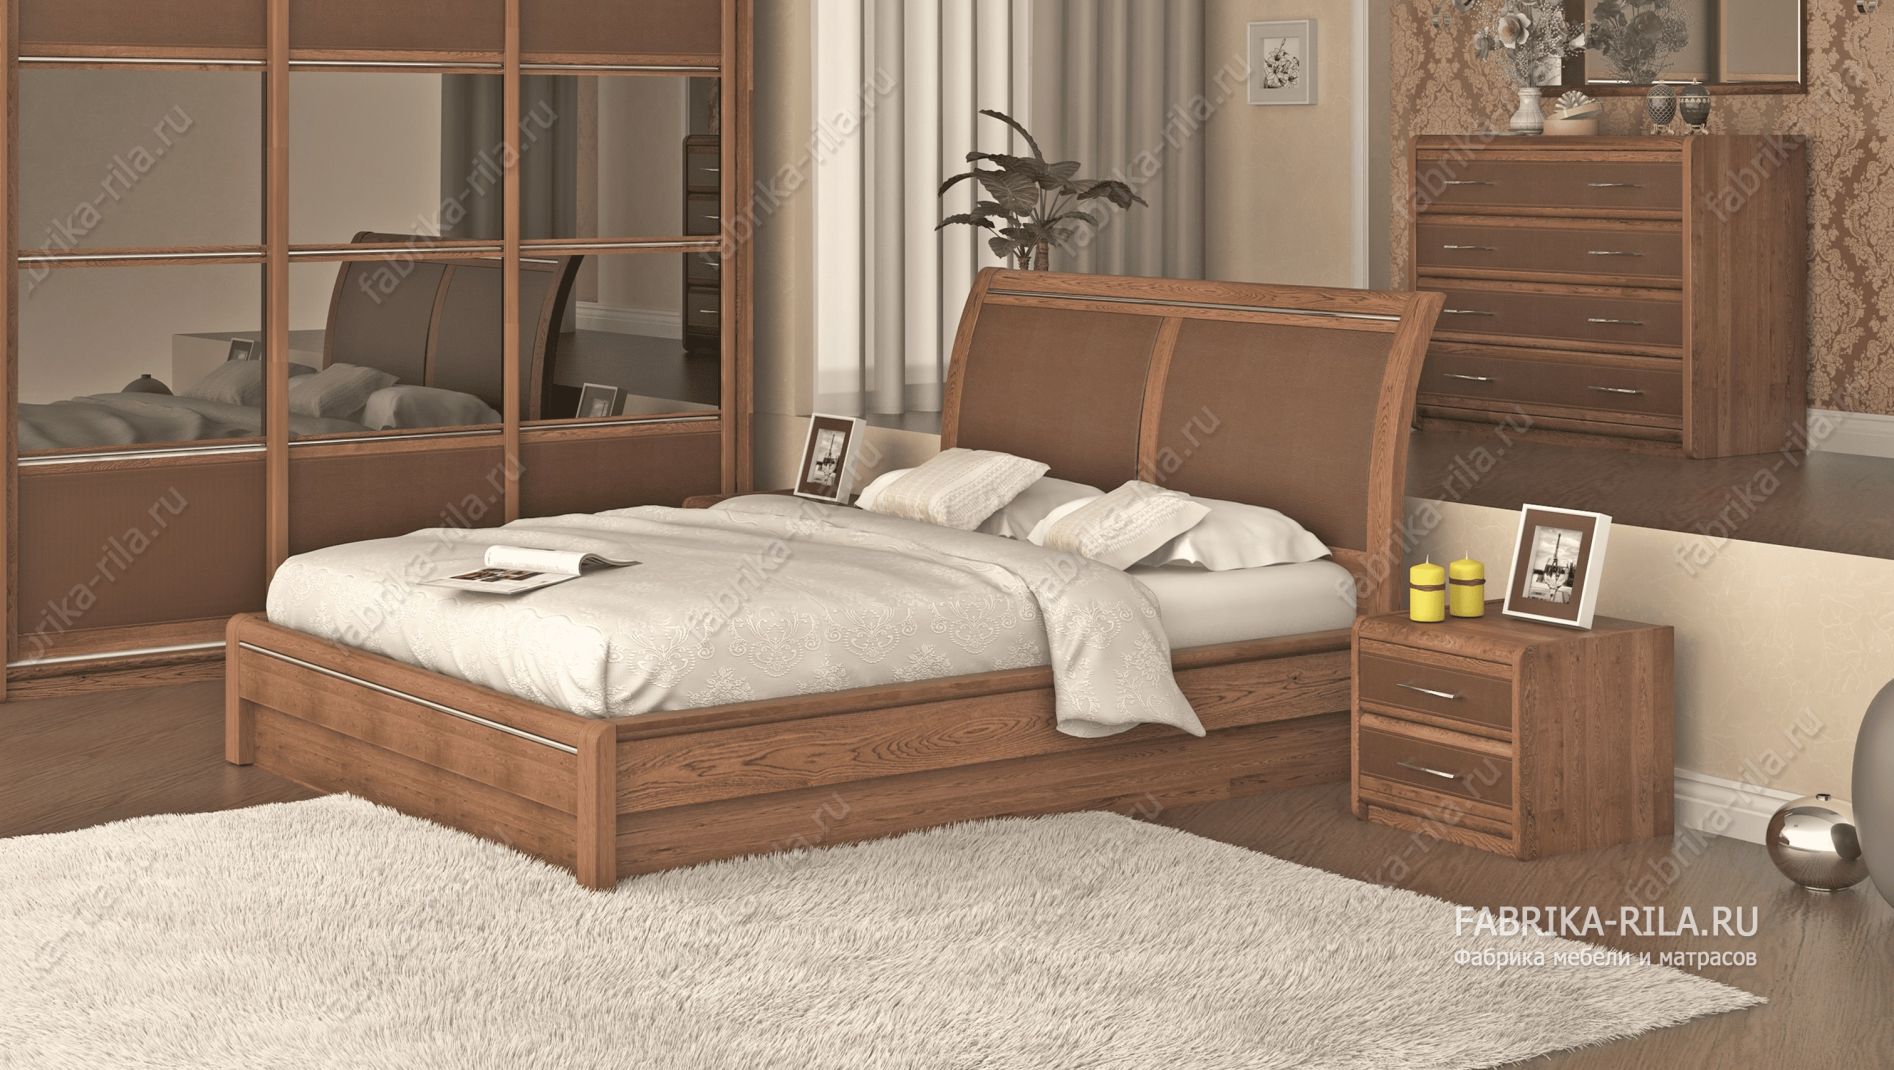 кровать Okaeri 6 см— 90x200 см. из сосны